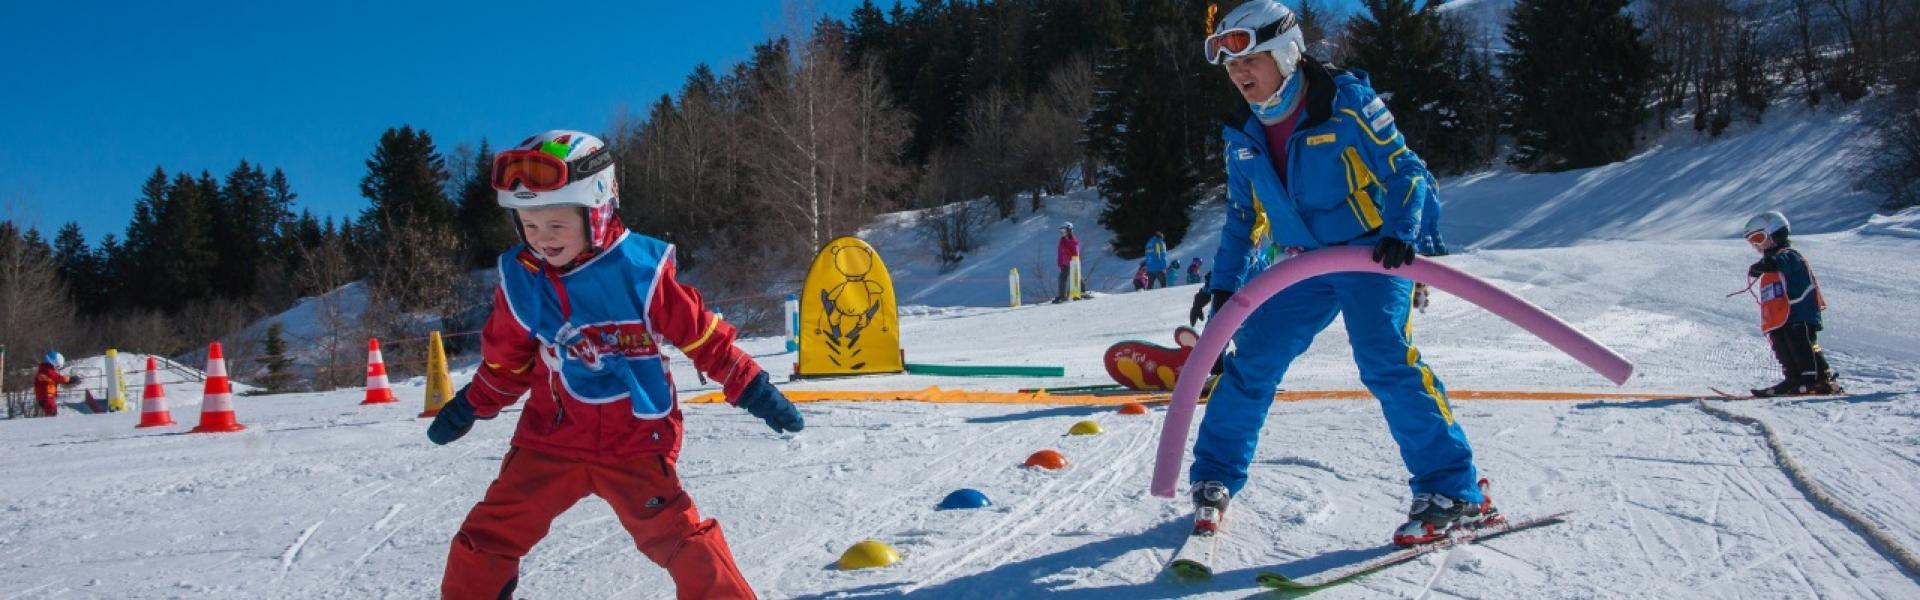 Skischule Pradas Resort